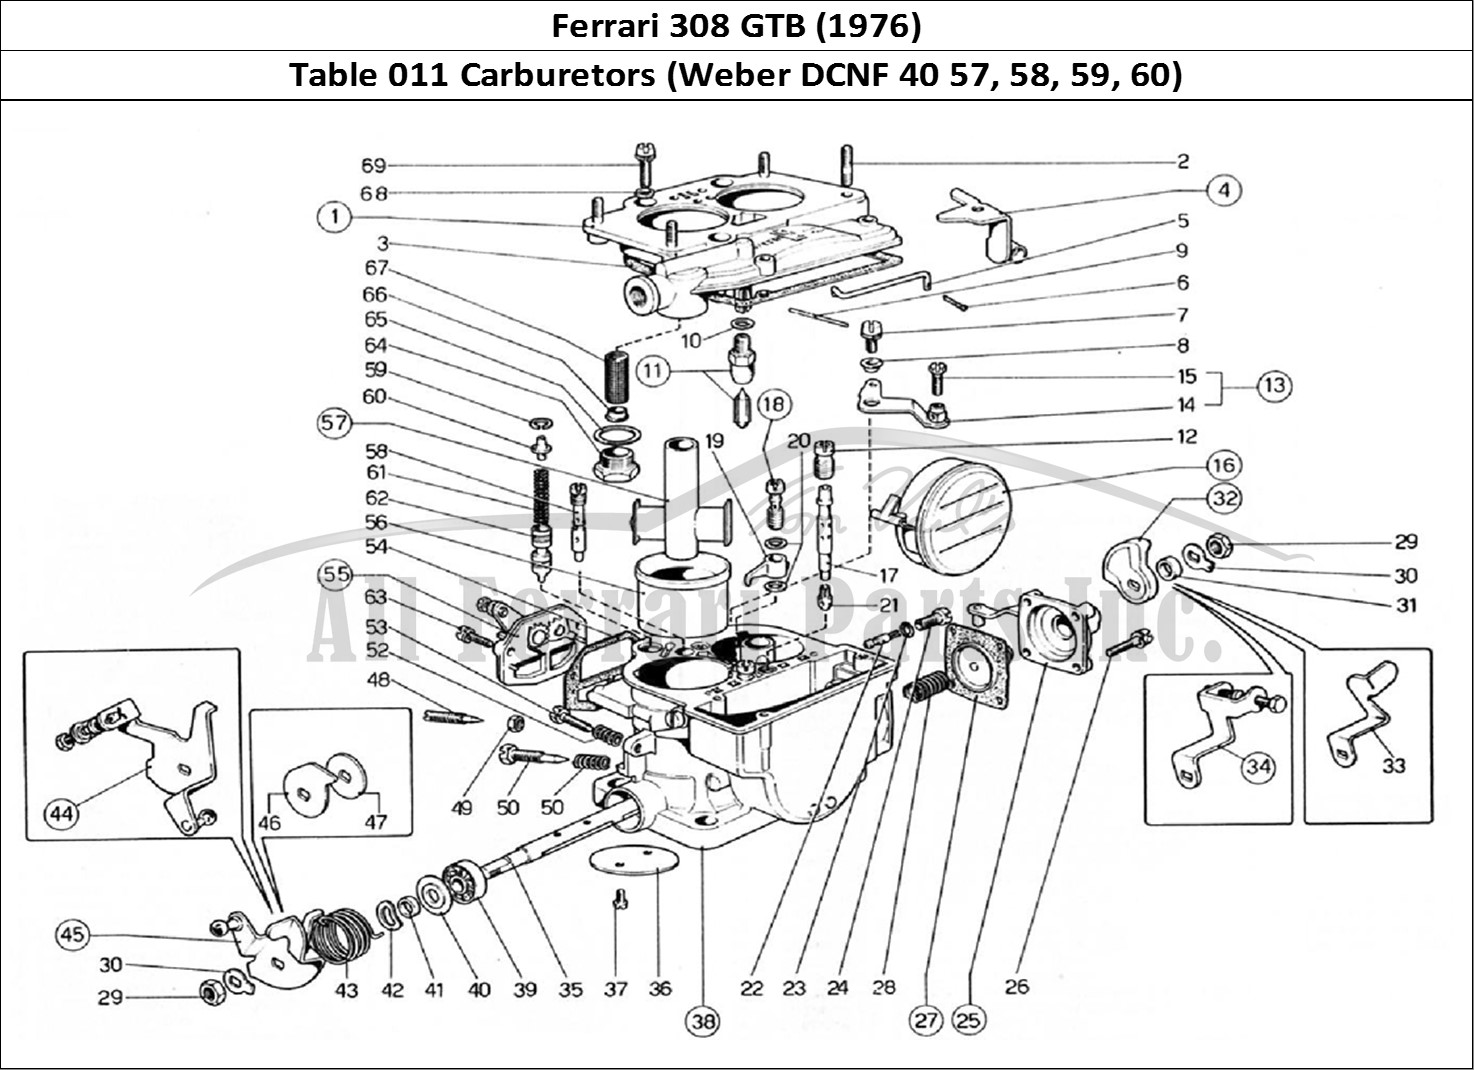 Ferrari Parts Ferrari 308 GTB (1976) Page 011 Carburettors (Weber 40 DC